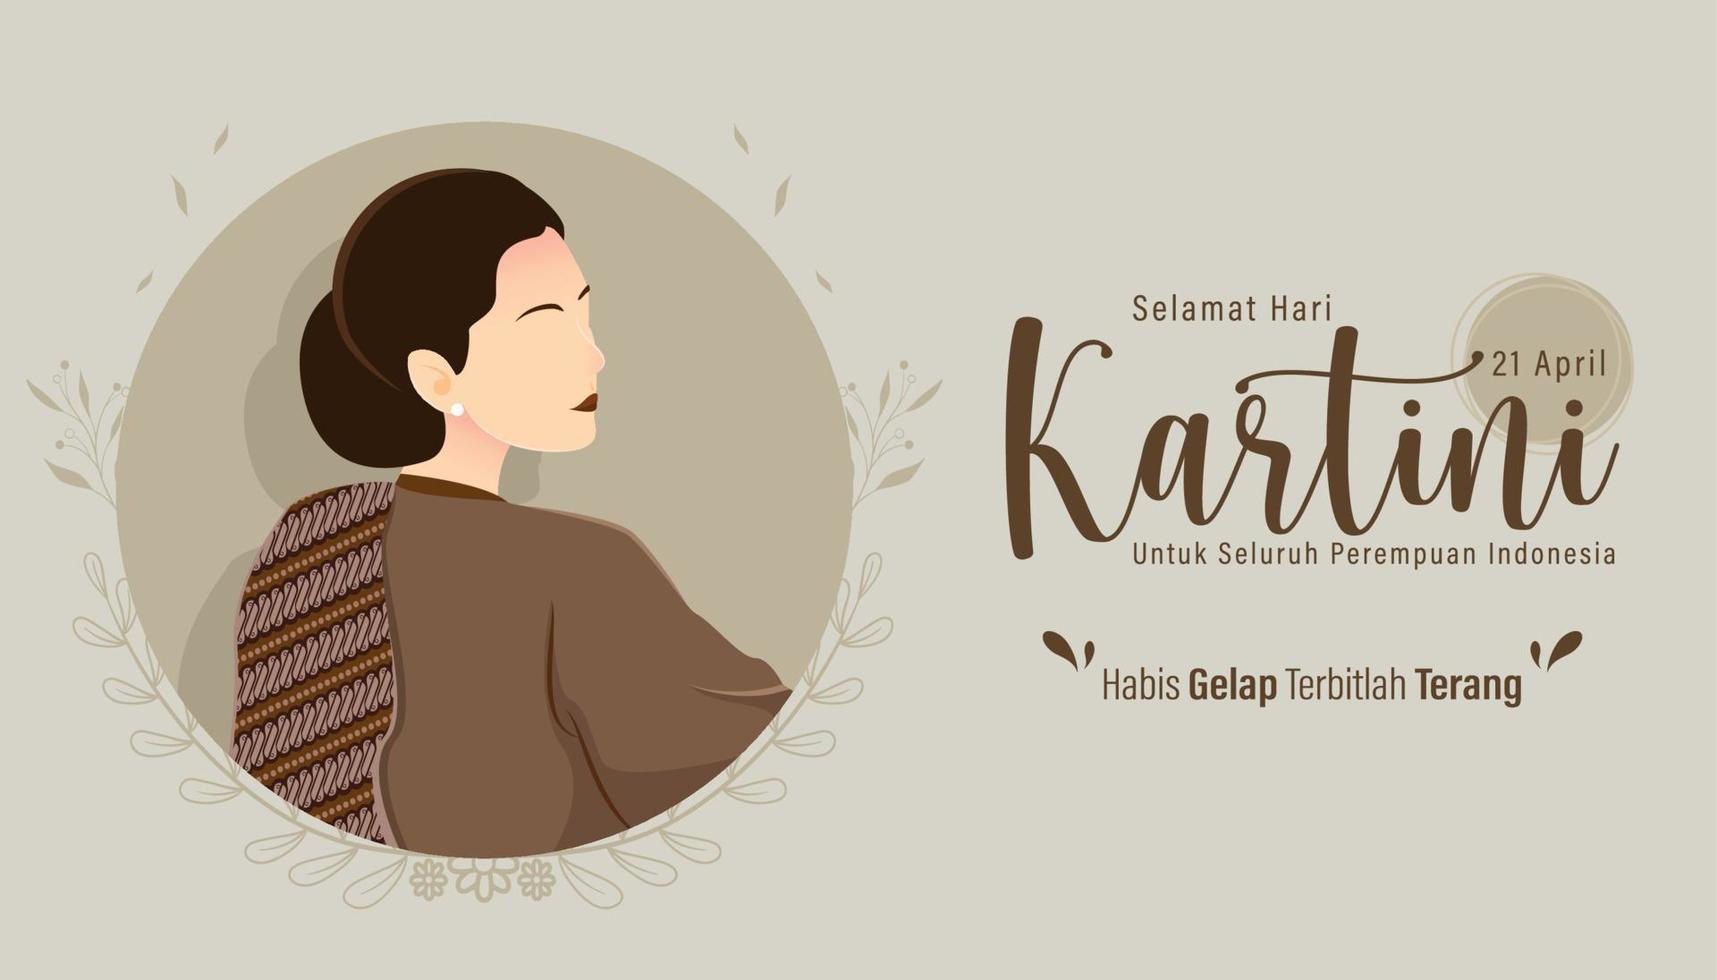 selamat hari kartini significa feliz dia de kartini. kartini é uma heroína indonésia. habis gelap terbitlah terang significa que depois da escuridão vem a luz. ilustração vetorial. vetor